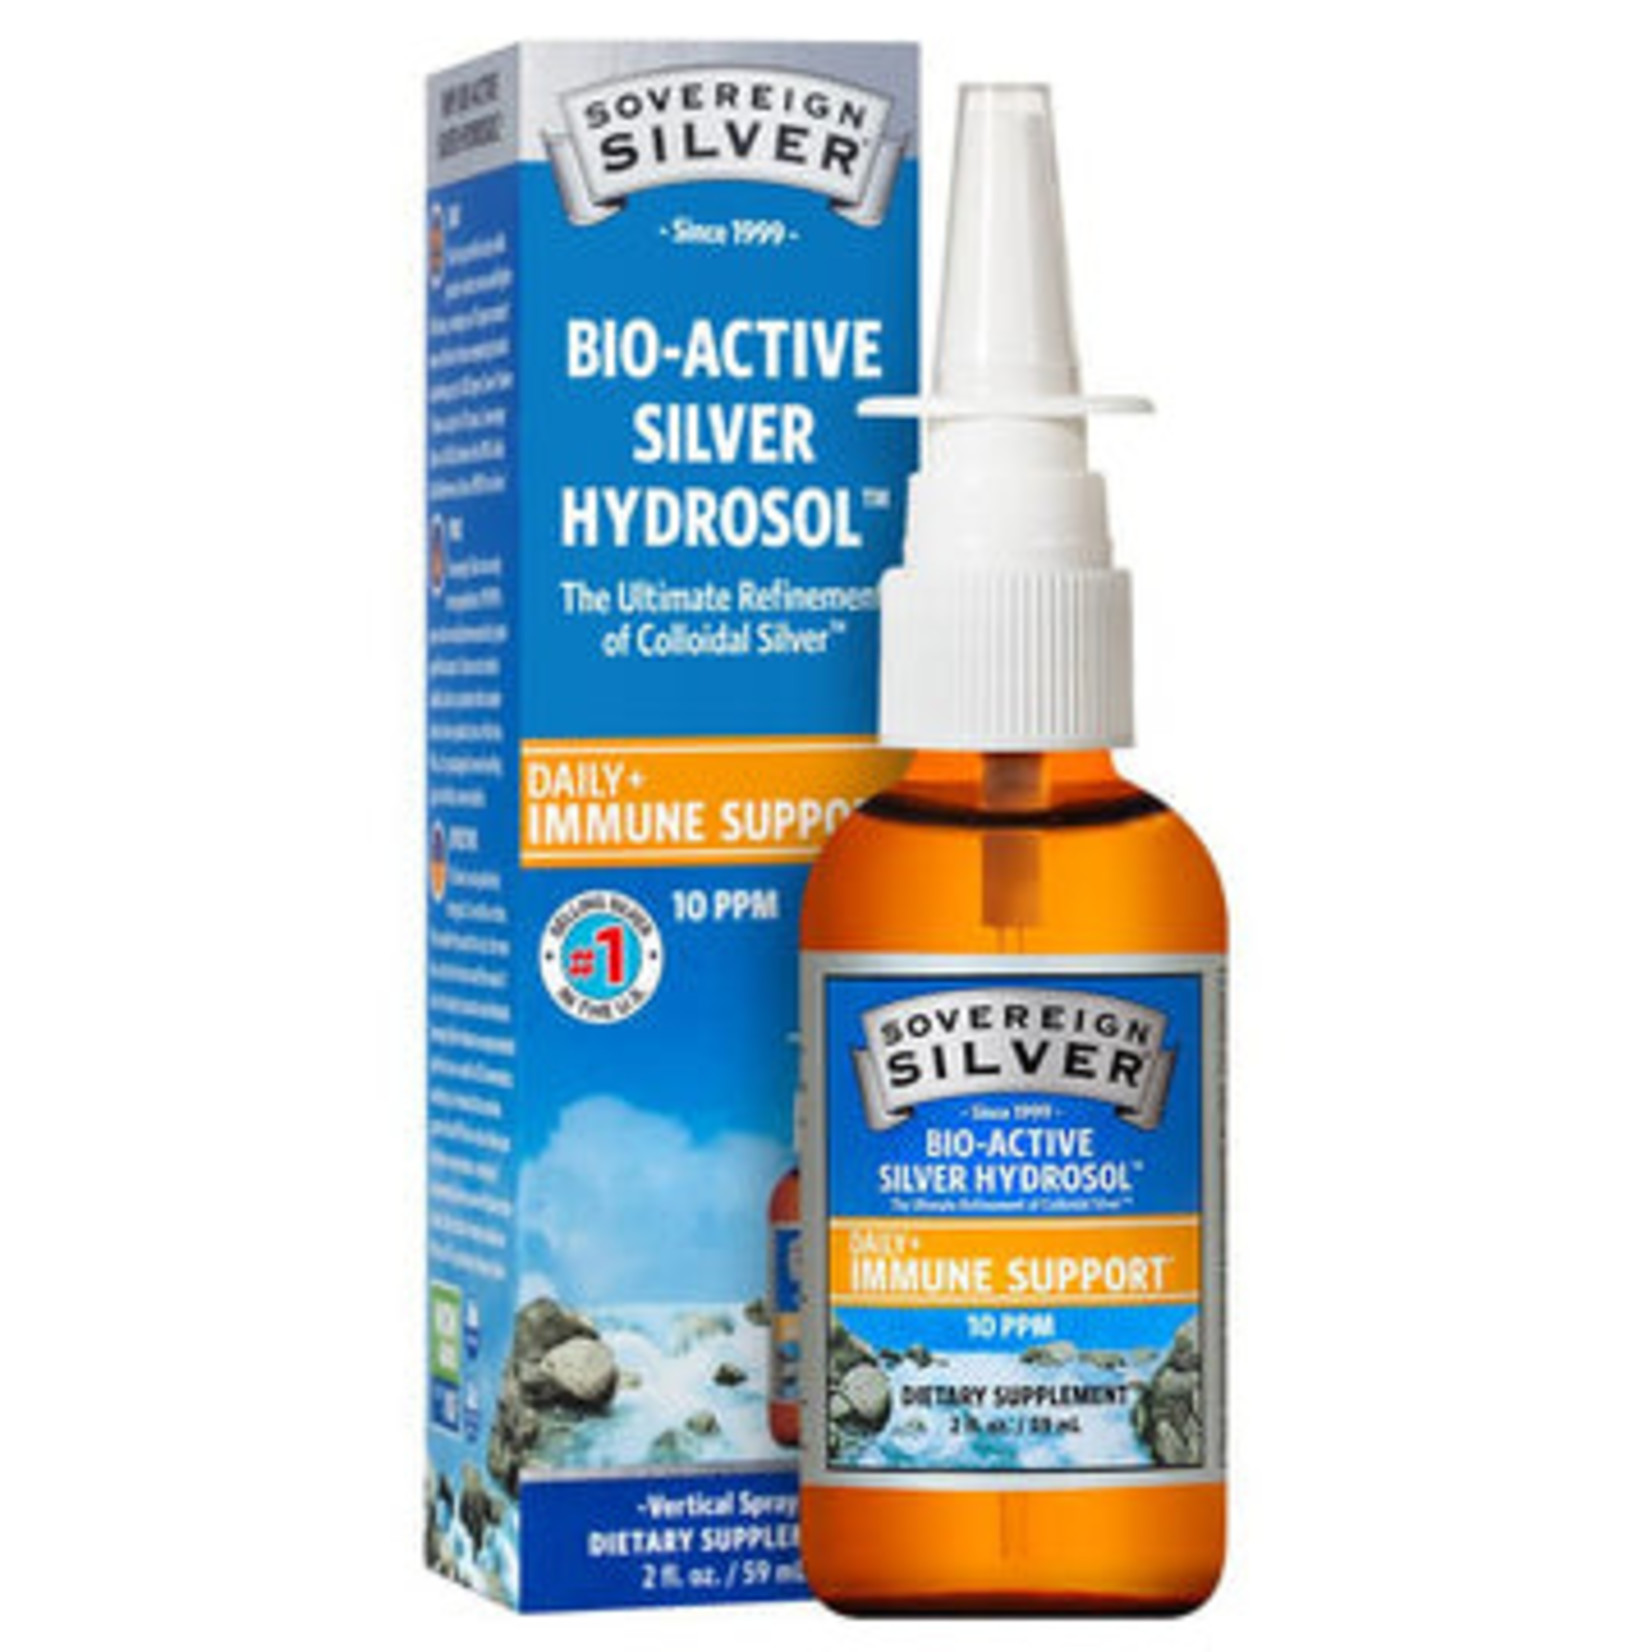 Sovereign Silver Sovereign Silver - Bio-Active Silver Hydrosol Sinus Relief Vertical Spray - 2 oz spray